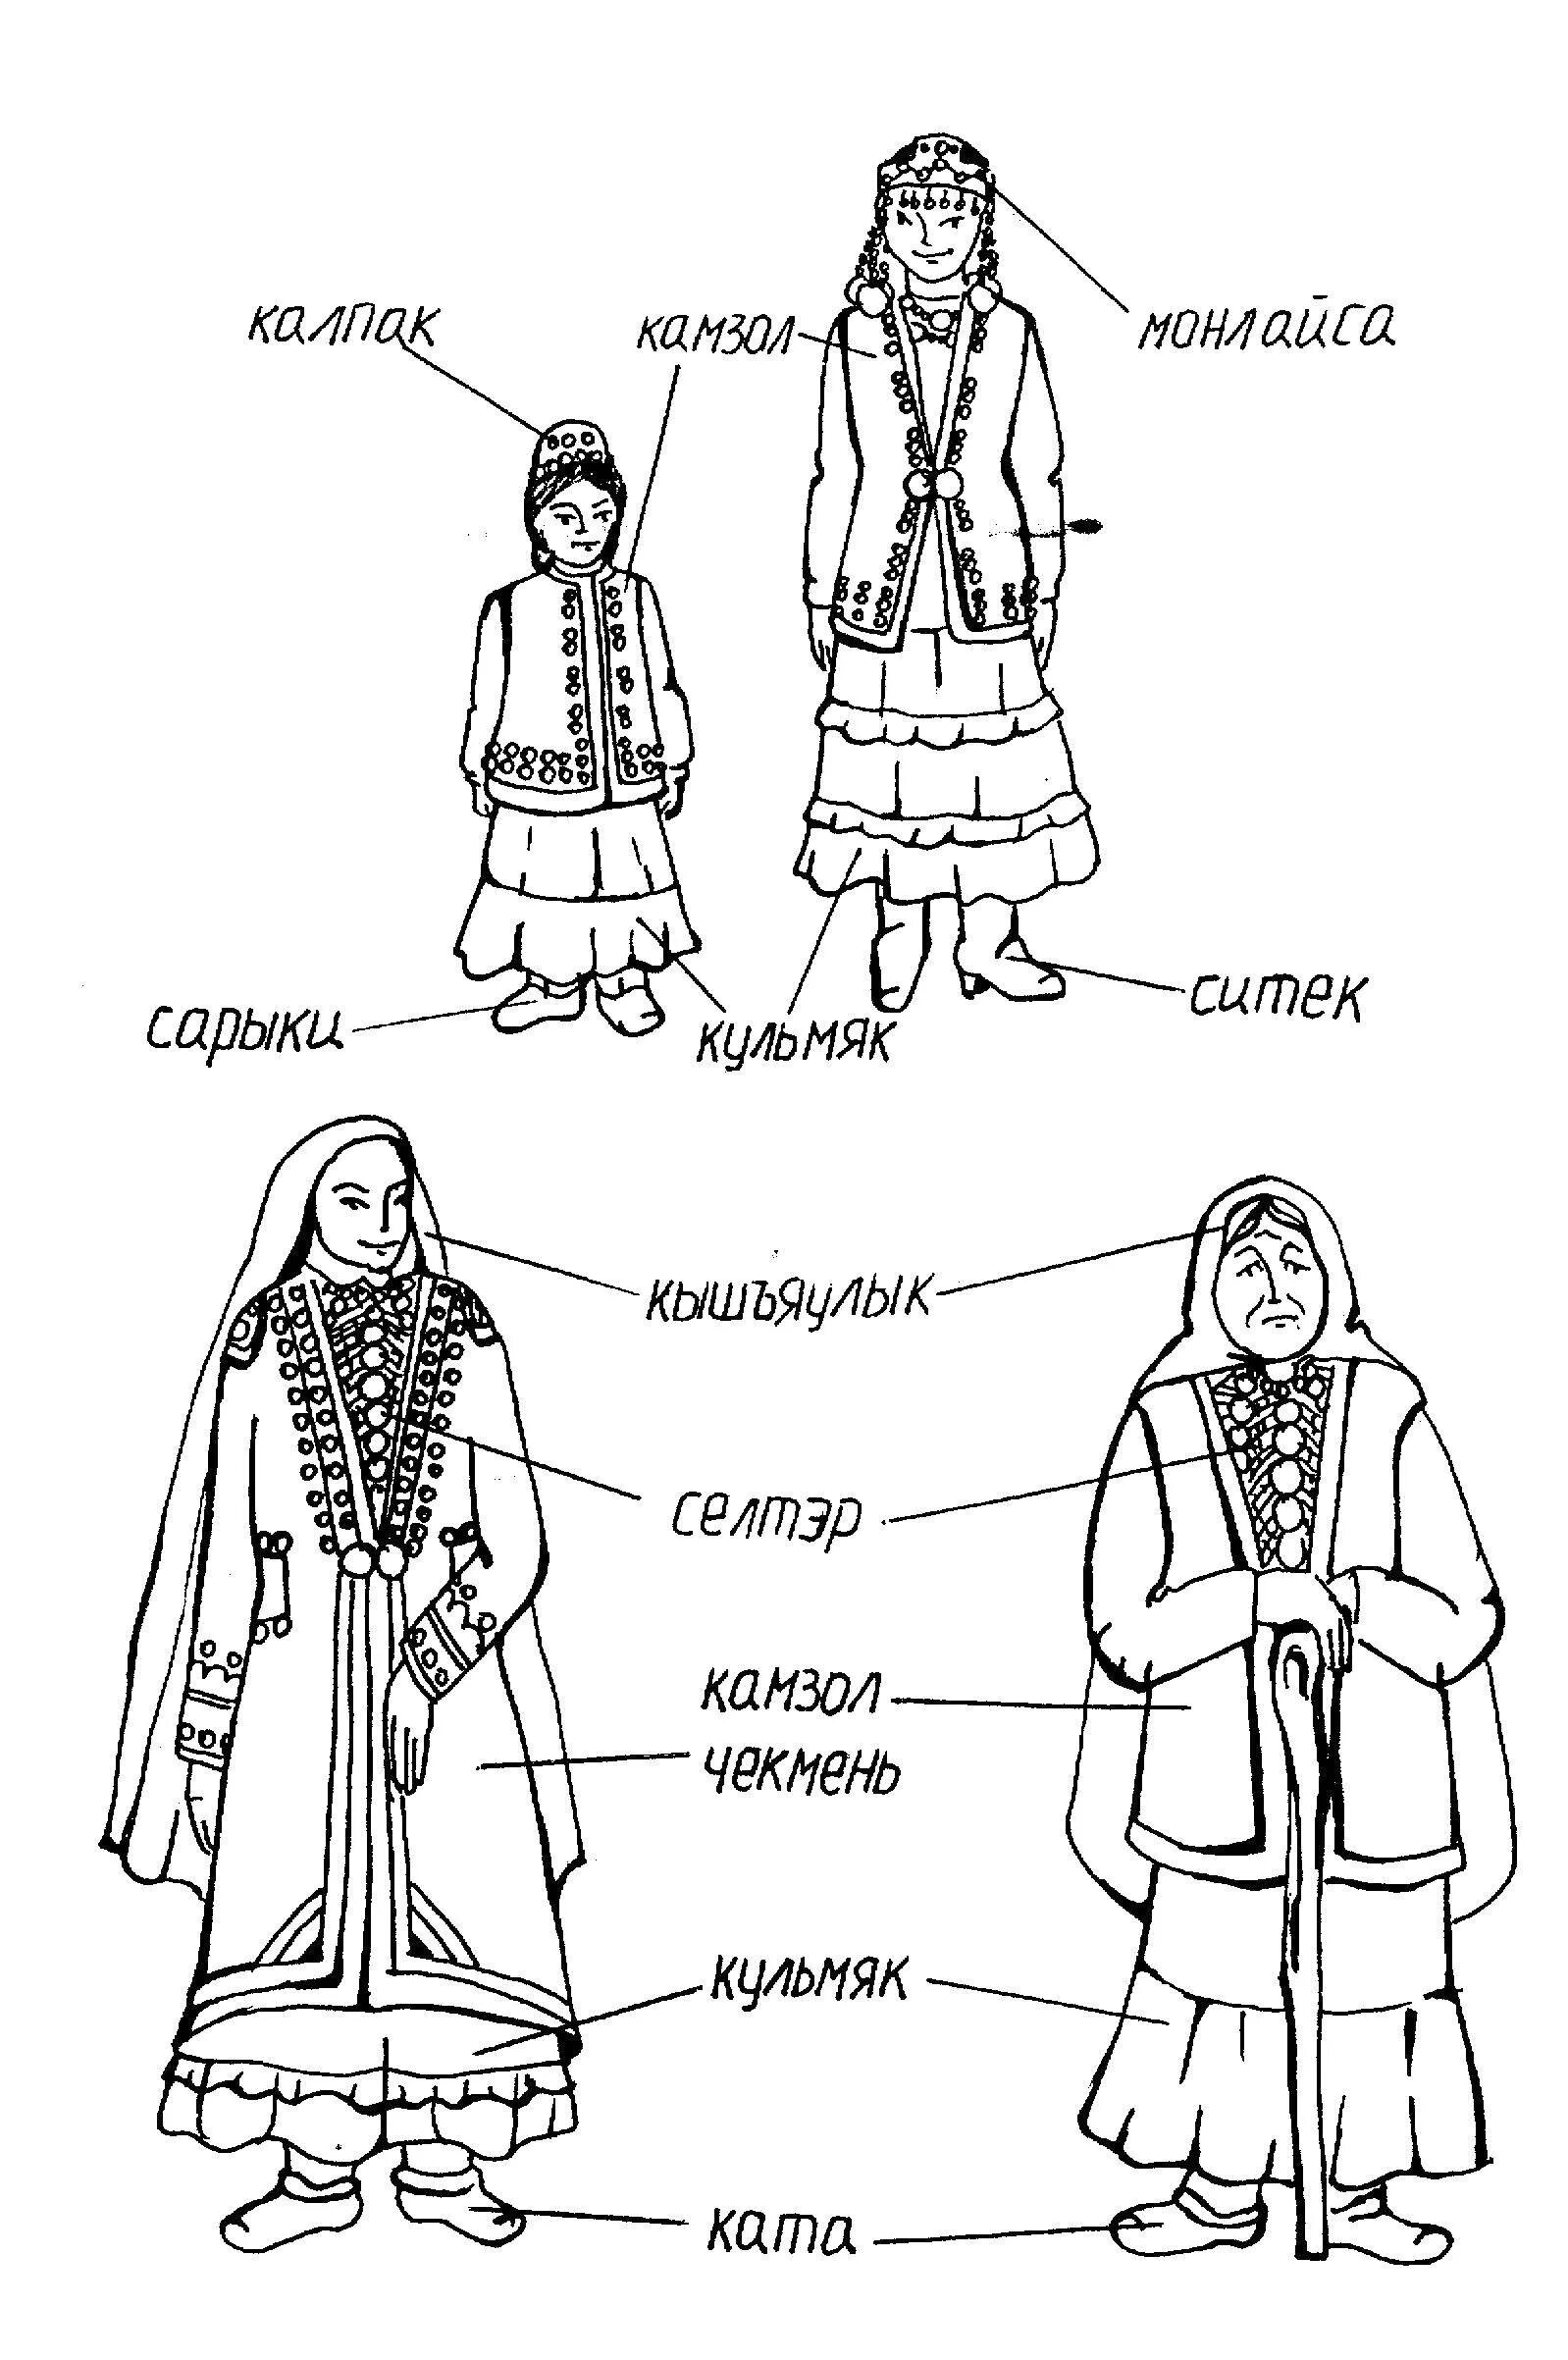 Bashkir national costume for children #13